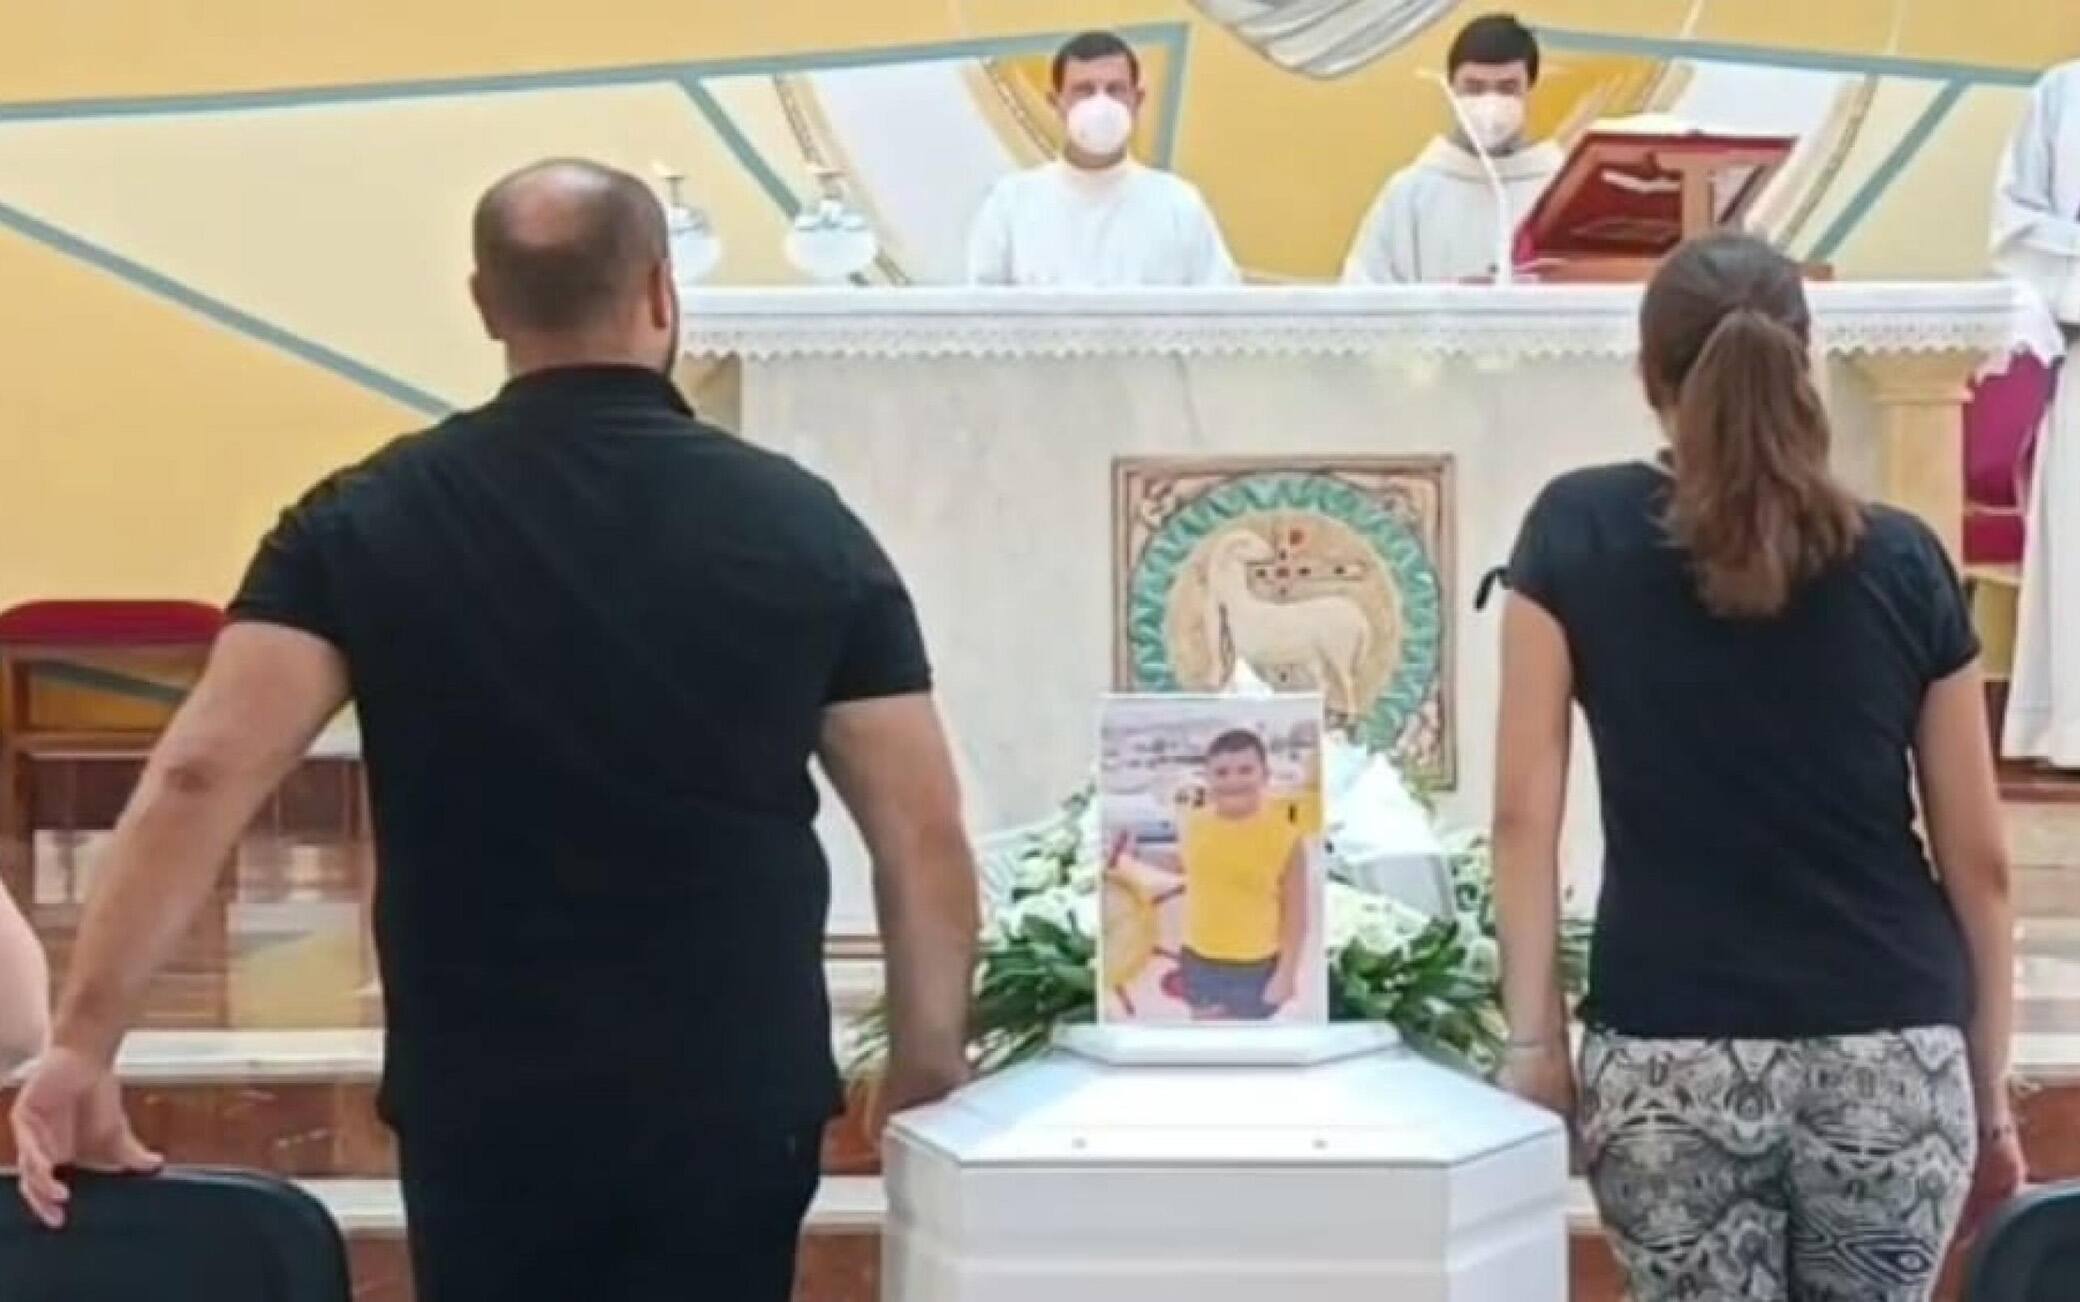 La mamma e il papà dietro alla bara bianca del figlio Andrea Mirabile, morto a 7 anni, il 2 luglio, a Sharm el sheikh mentre era in vacanza con i genitori, durante i funerali nella chiesa di San Basilio a Palermo, 16 luglio 2022.
ANSA/Ignazio Marchese